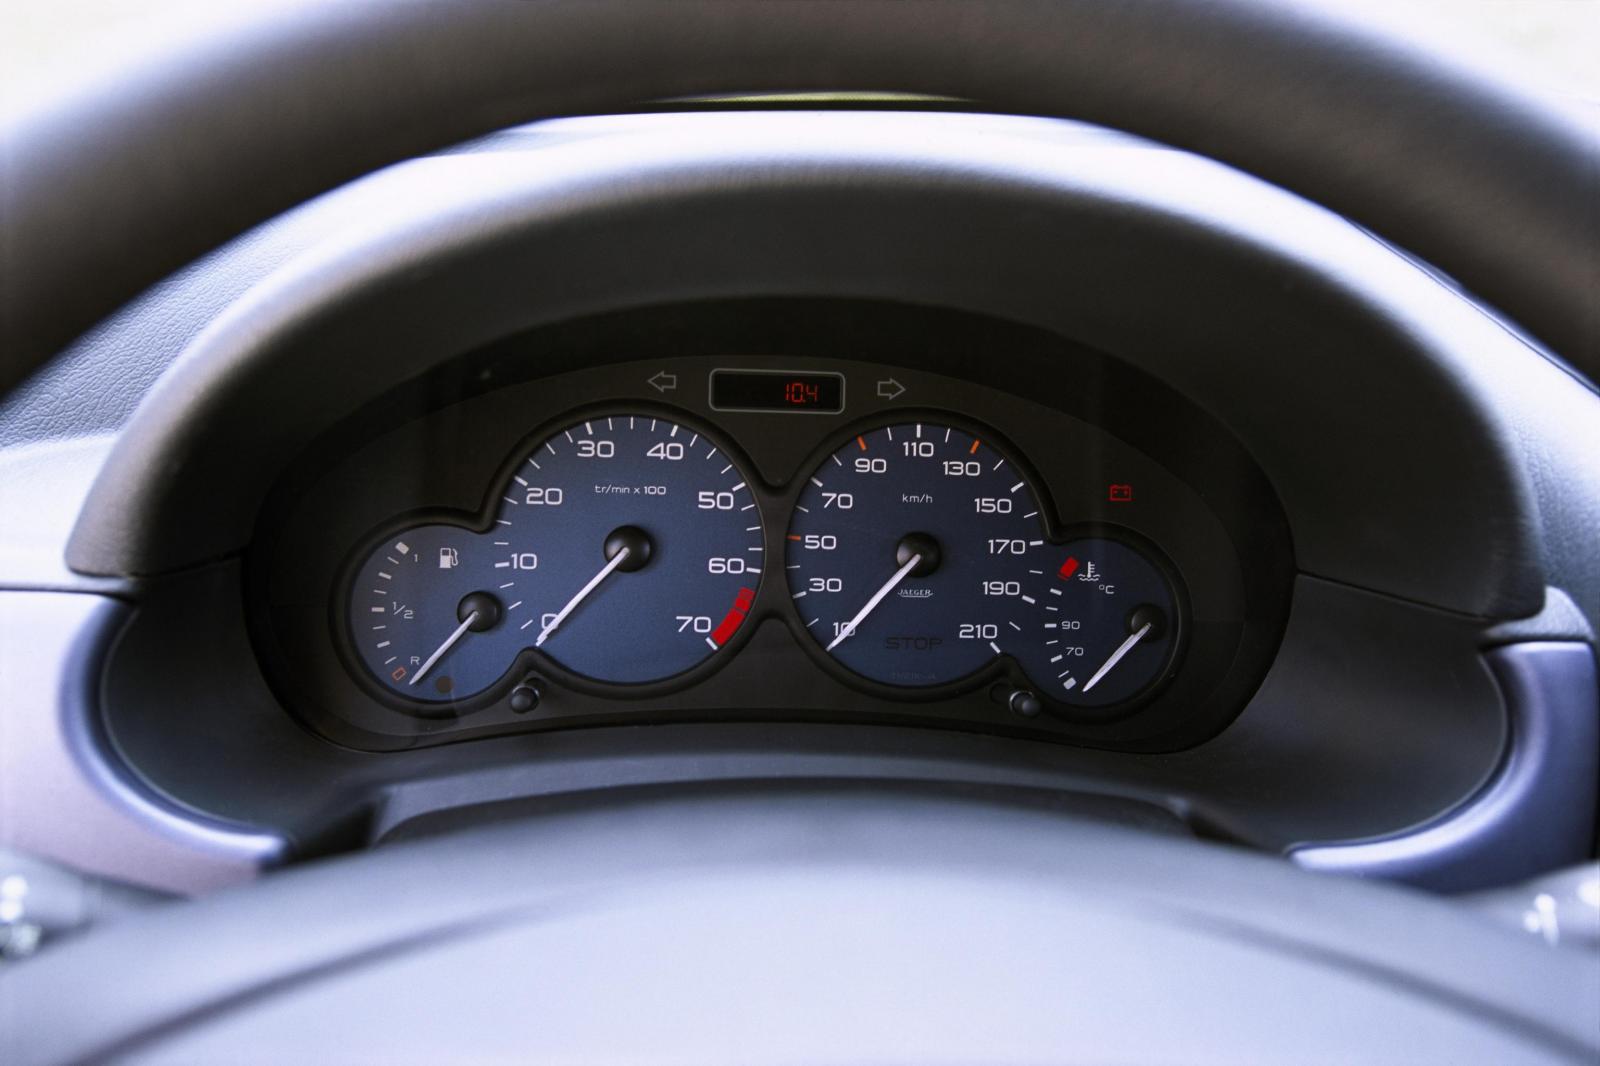 Berlingo 2002 speedometer